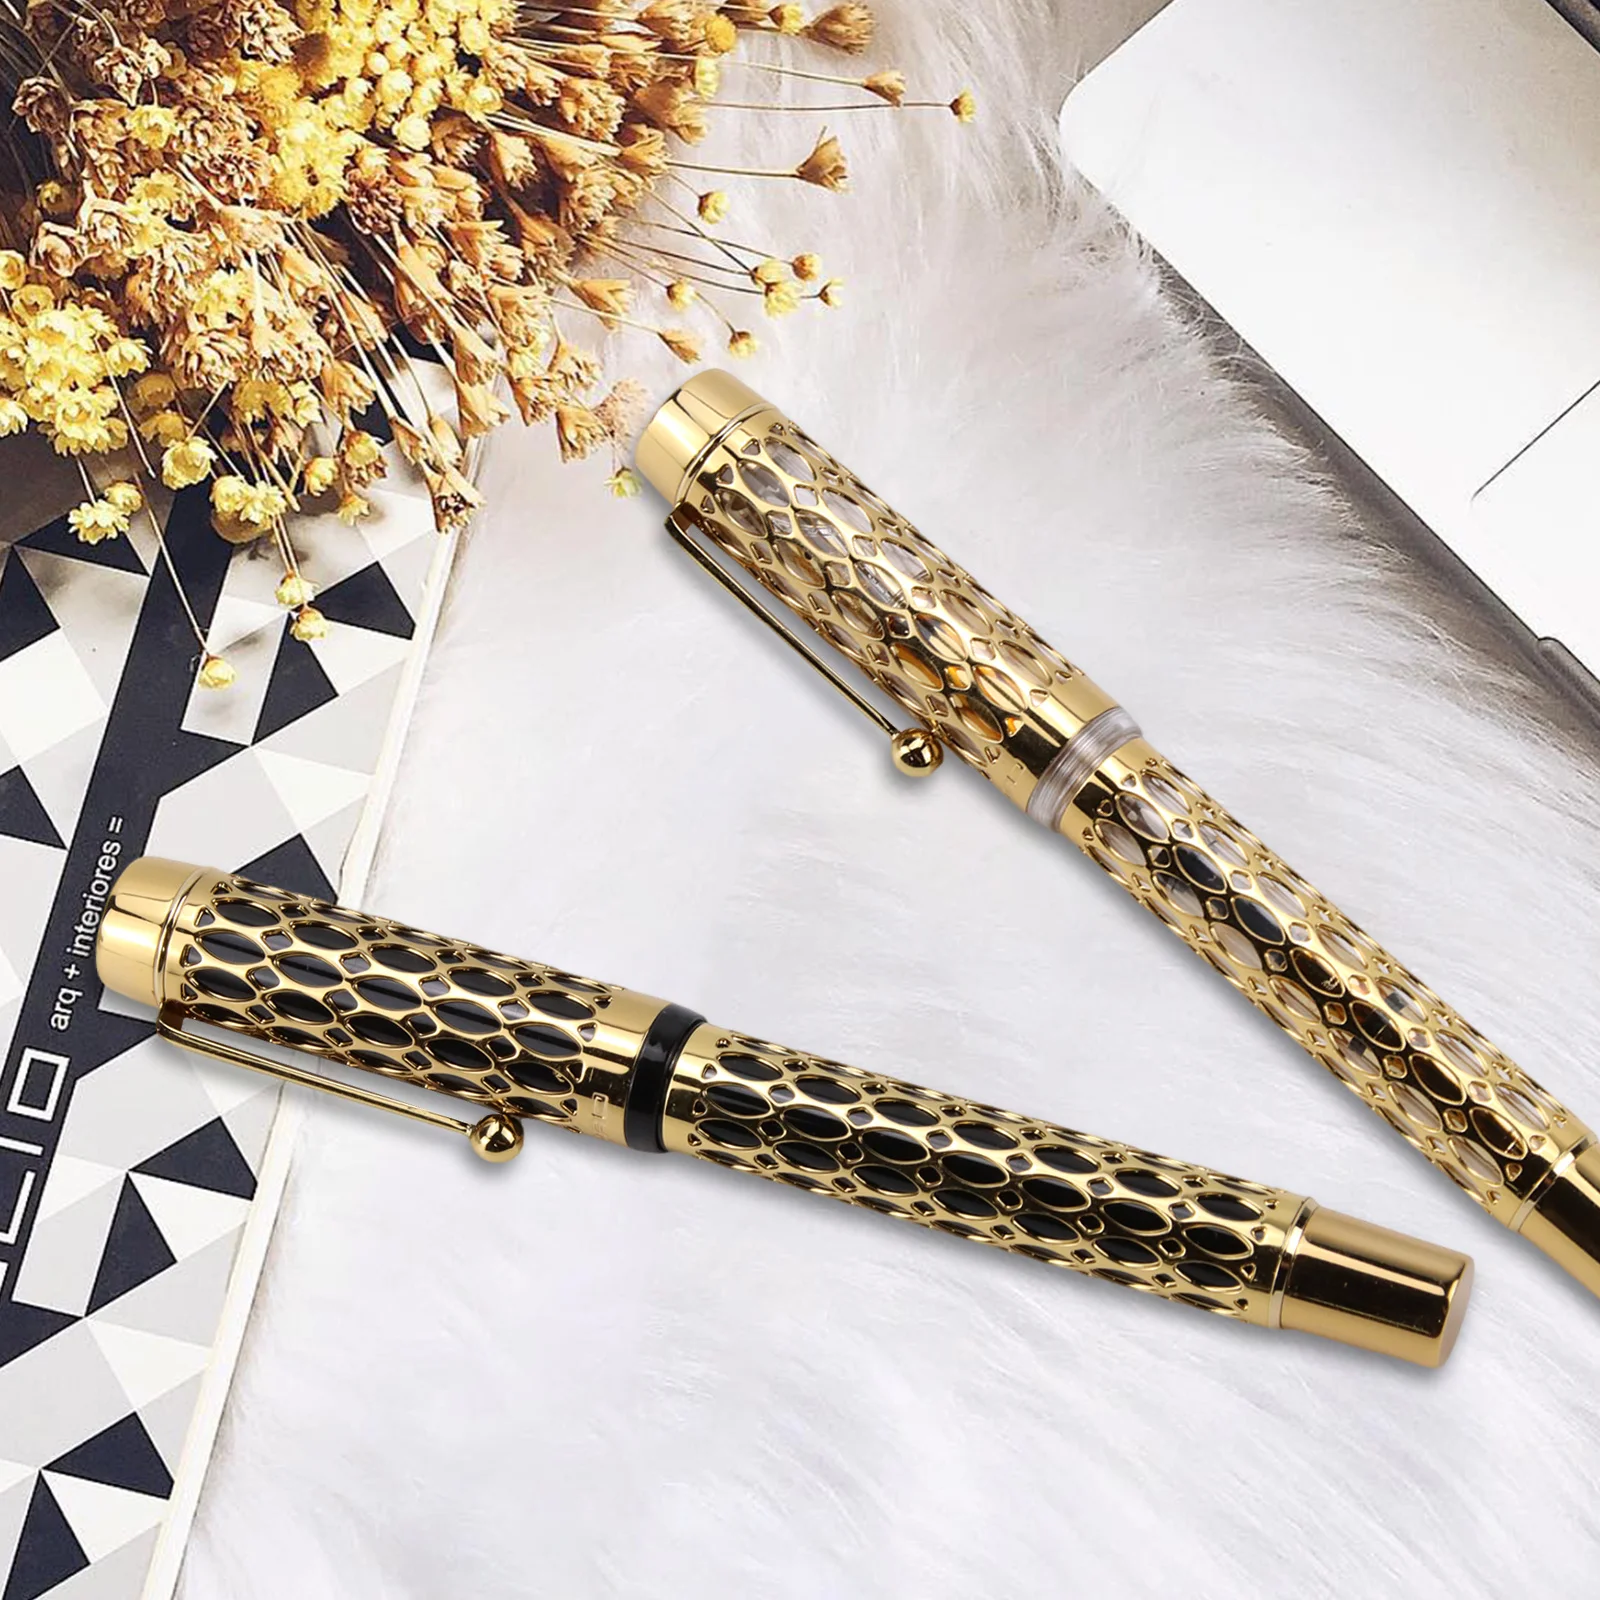 

Перьевая ручка Jinhao Century 100 с гальваническим покрытием и настоящим золотом